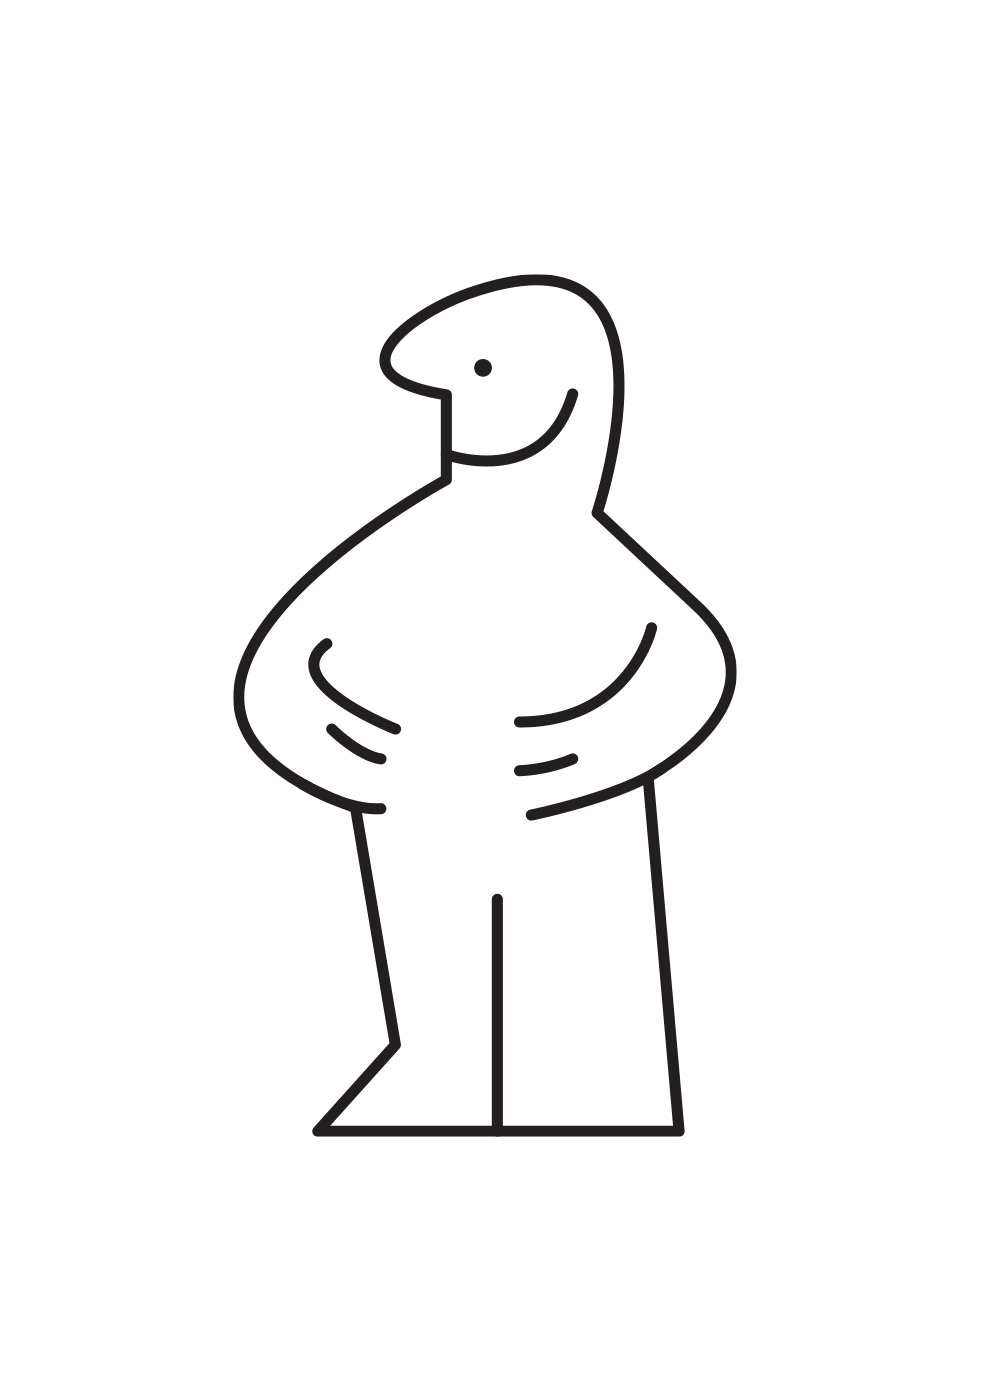 IKEA Man as Popular Cartoon Characters Neatorama